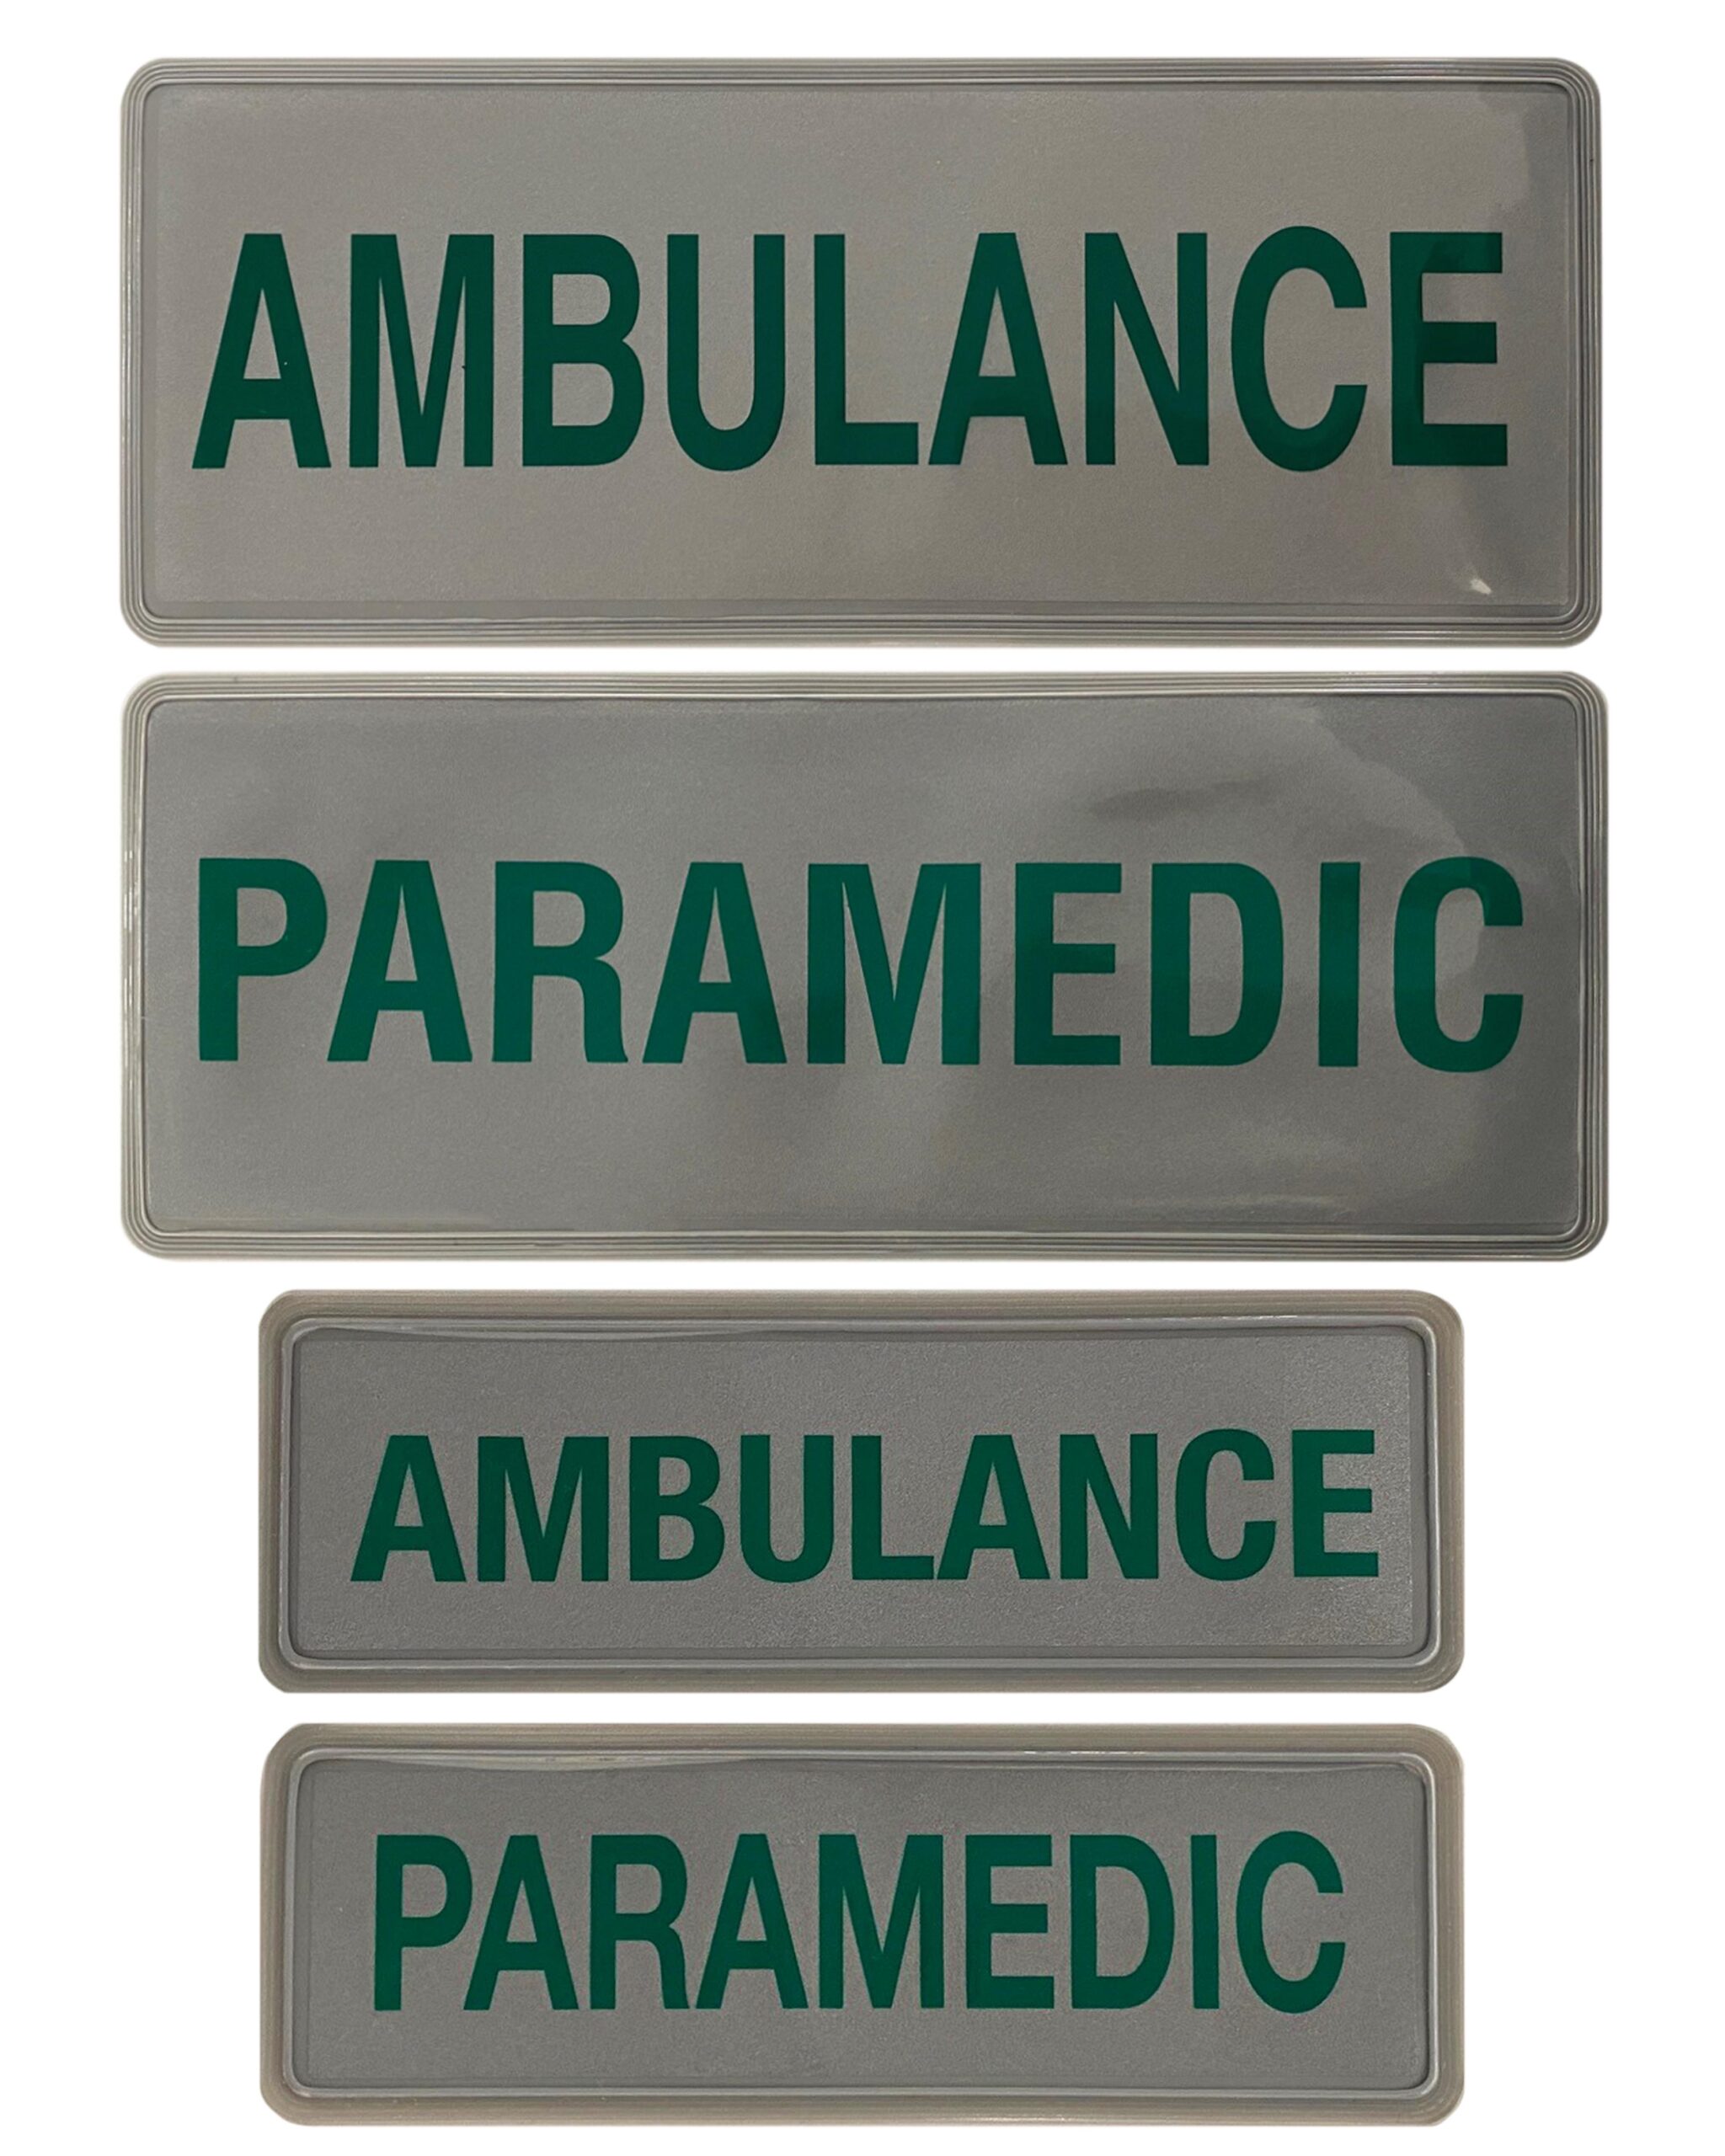 Encapsulated ambulance réfléchissant badge 300mm set 